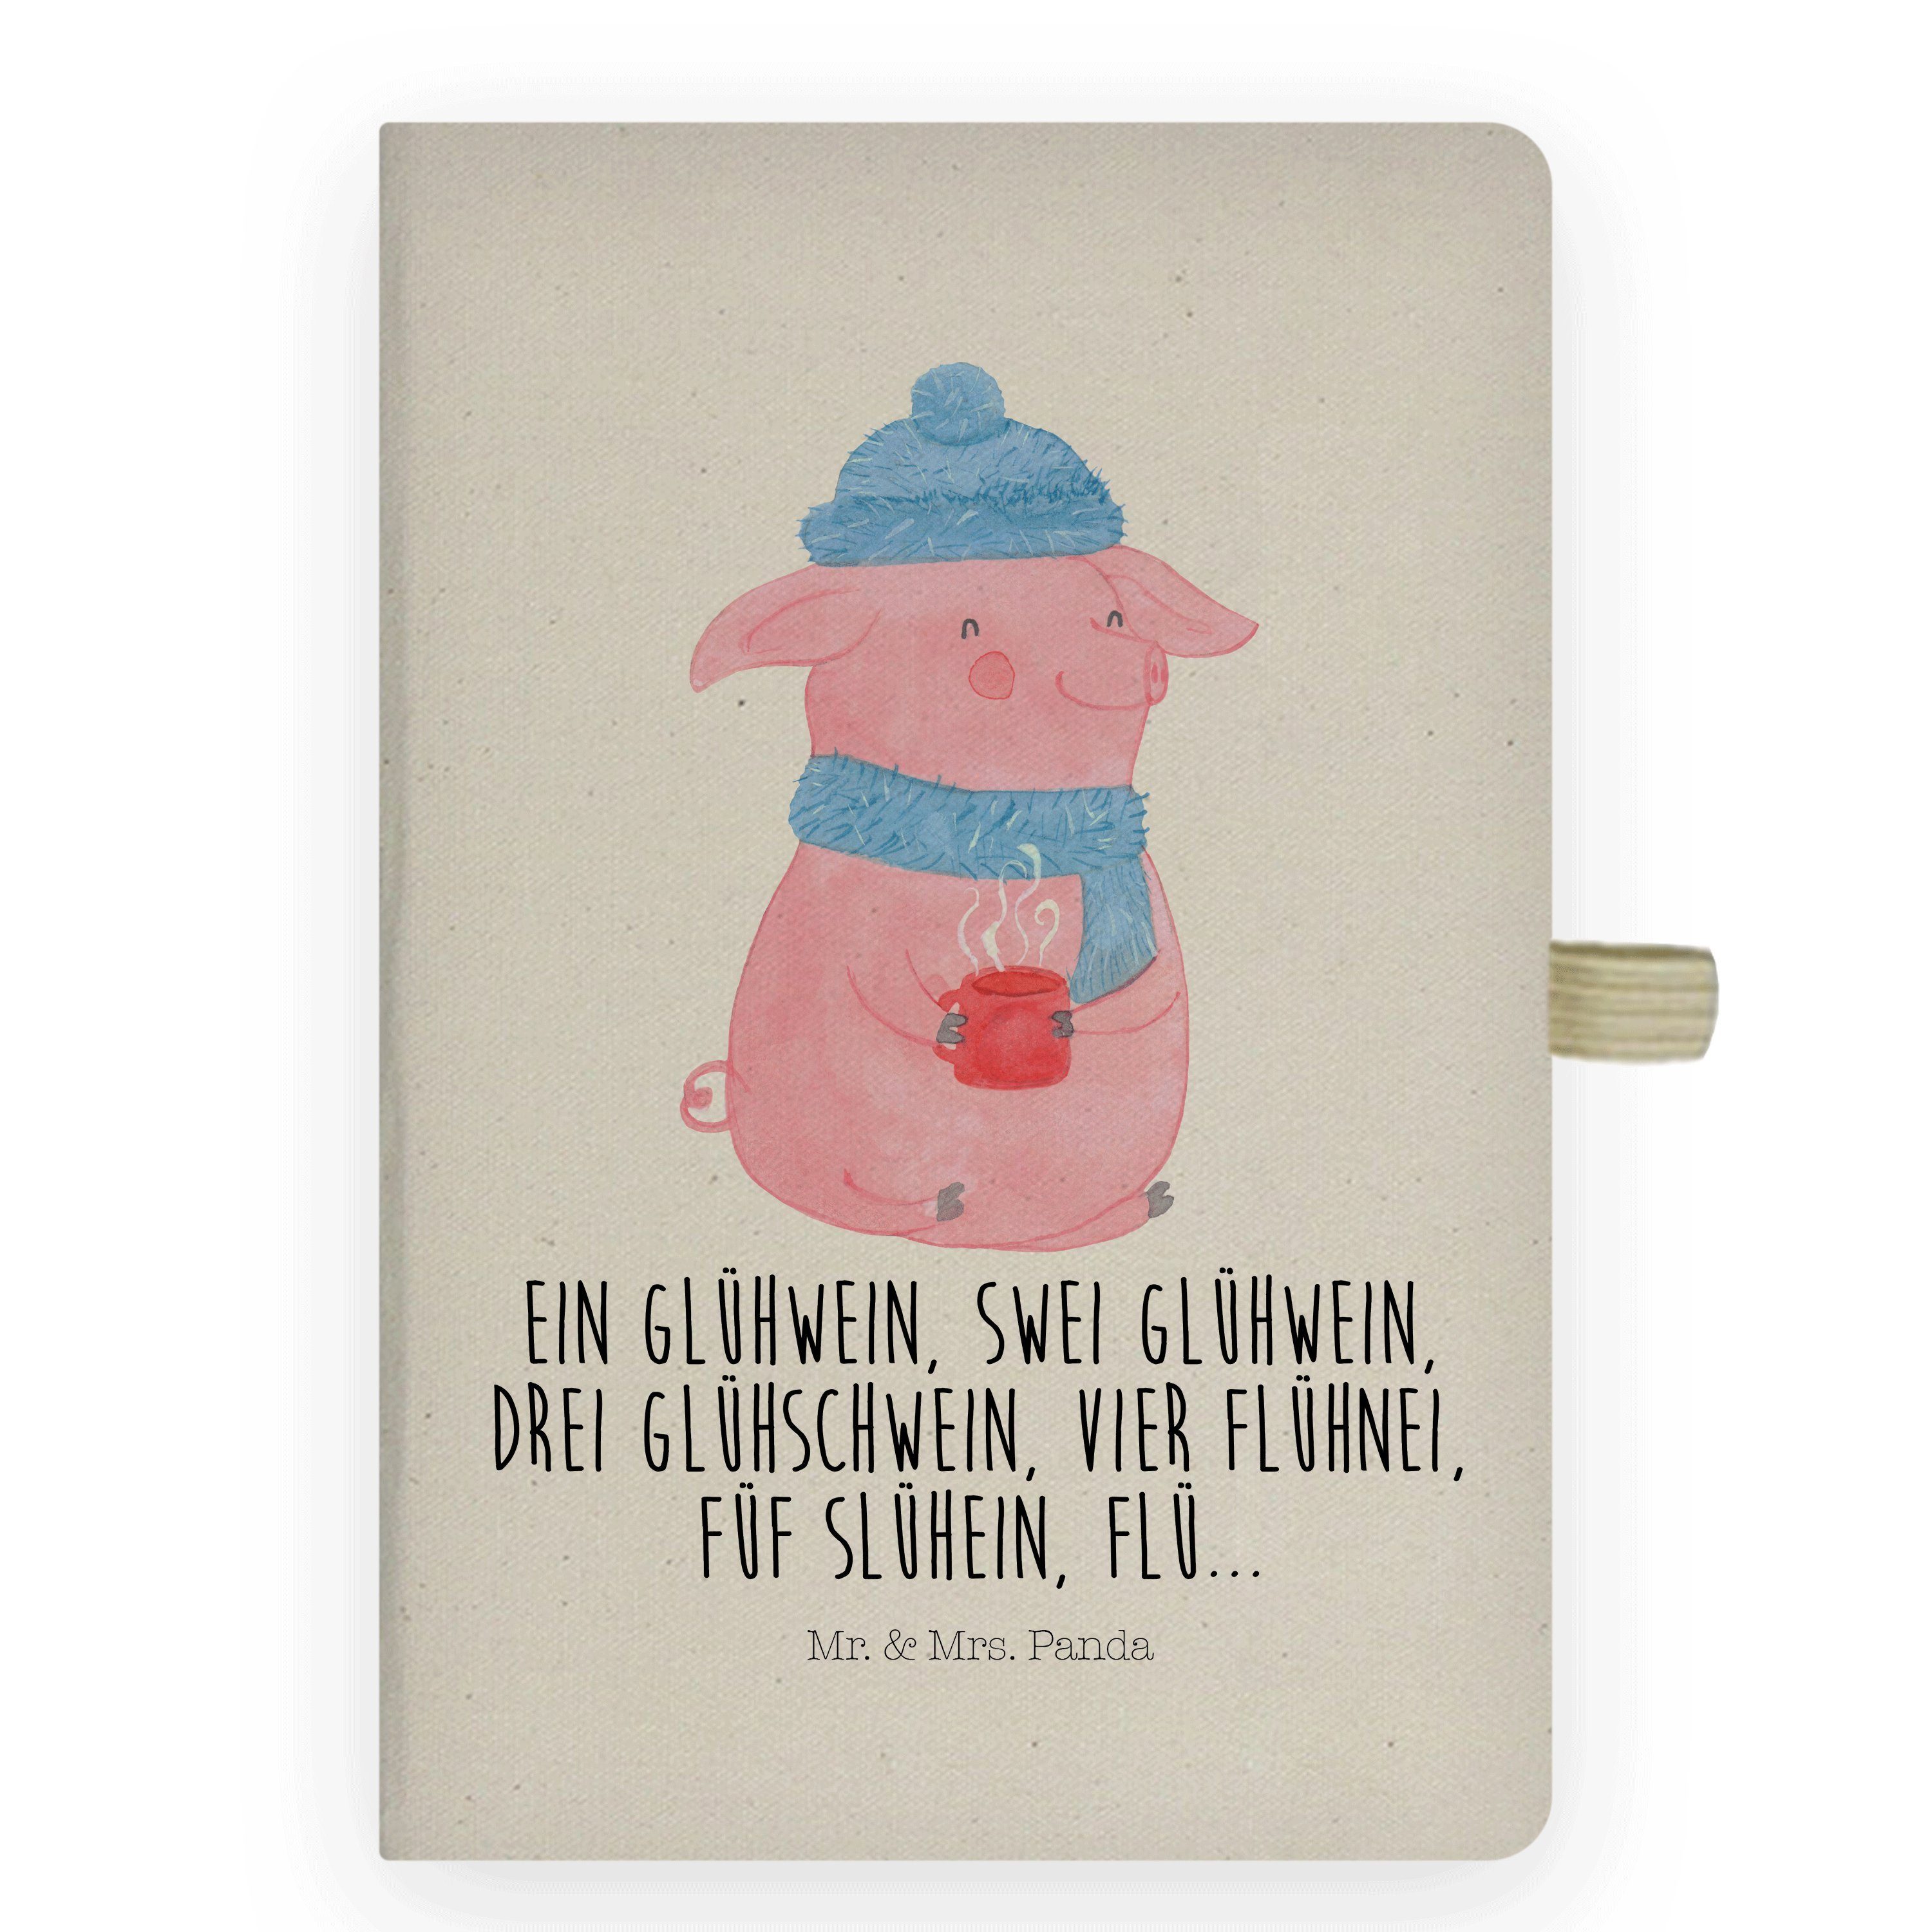 Mr. & Mrs. Panda Notizbuch Lallelndes Glühschwein - Transparent - Geschenk, Notizen, Spruch, Ein Mr. & Mrs. Panda